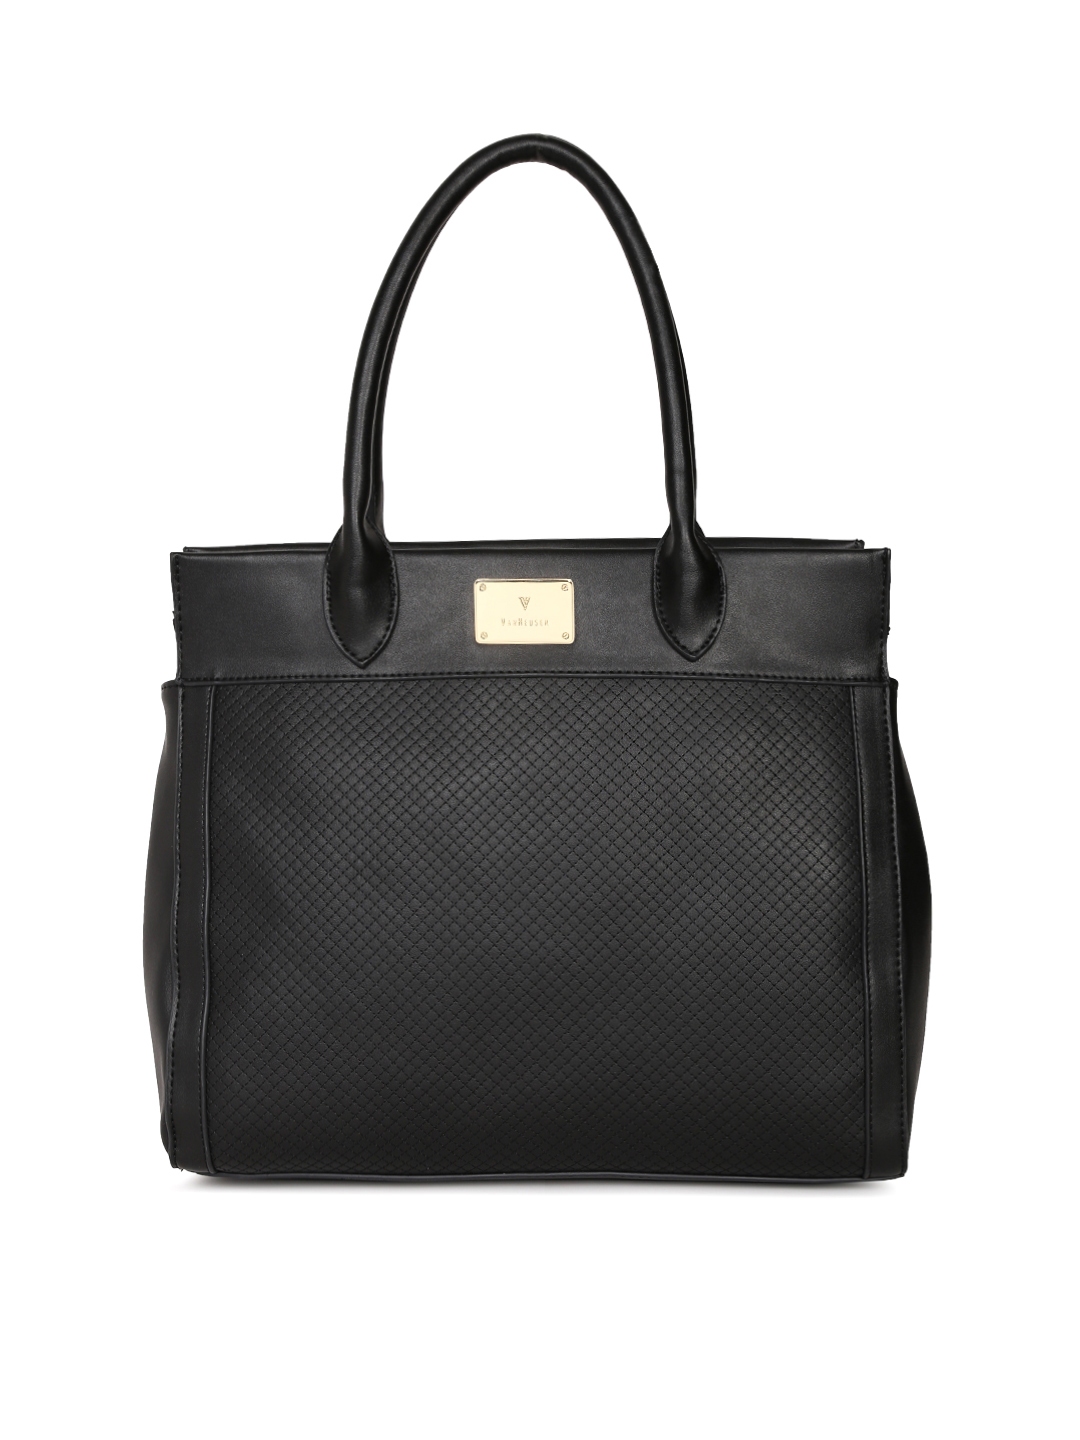 Buy Van Heusen Black Textured Handheld Bag - Handbags for Women 2219815 ...